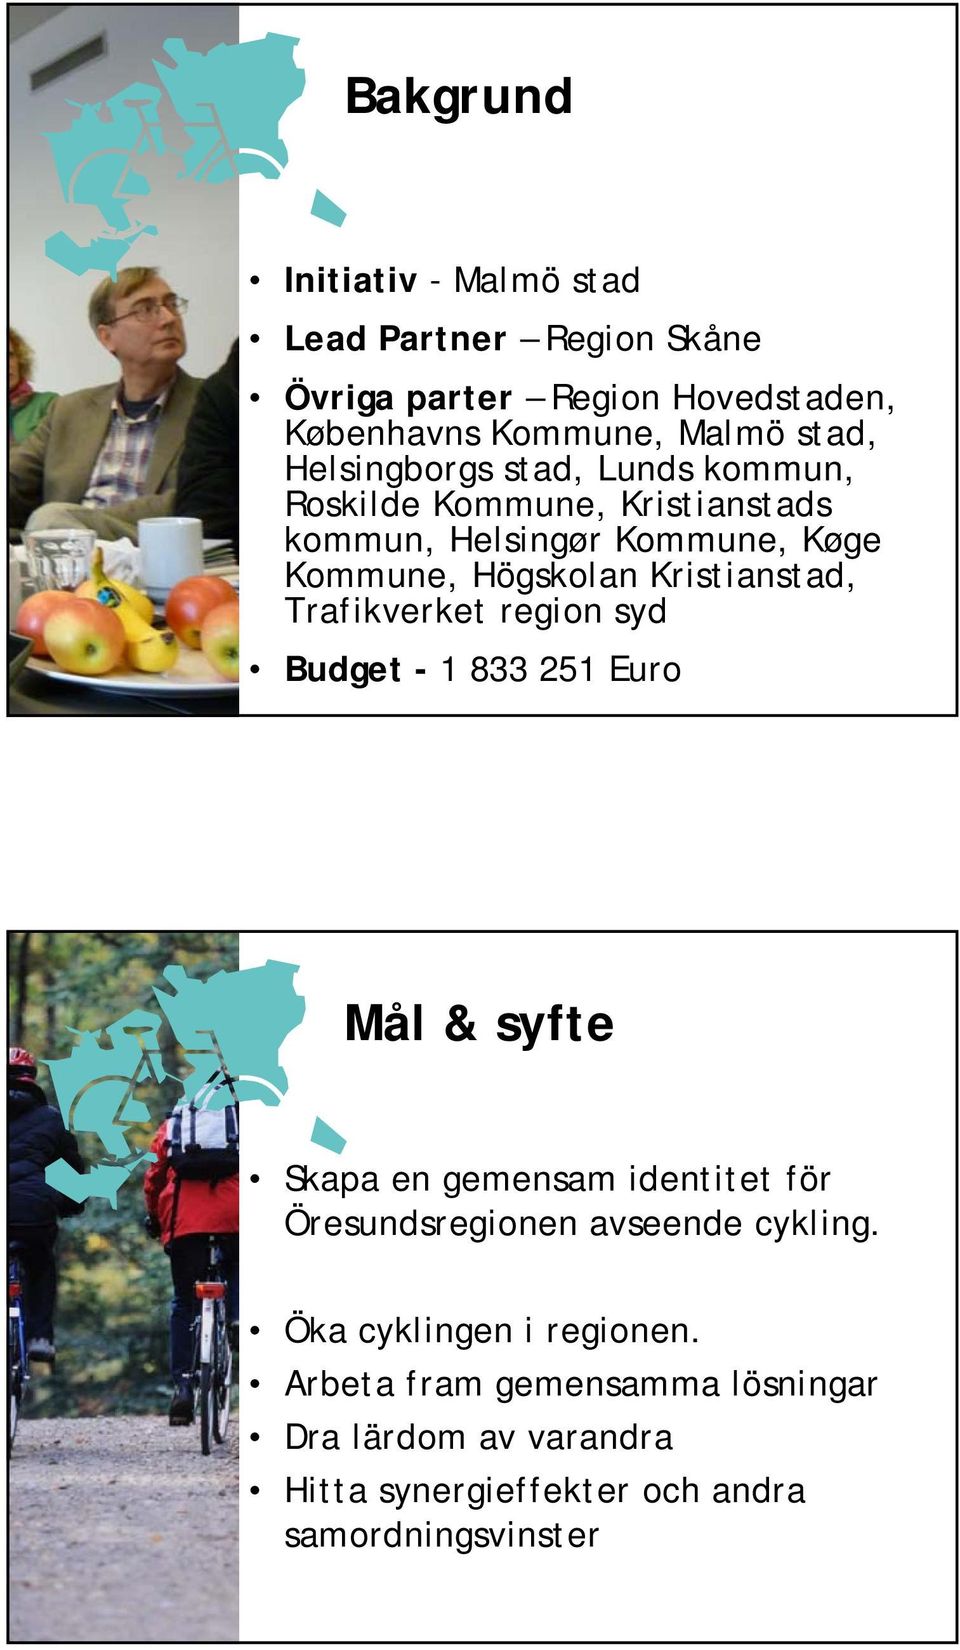 Kristianstad, Trafikverket region syd Budget - 1 833 251 Euro Mål & syfte Skapa en gemensam identitet för Öresundsregionen